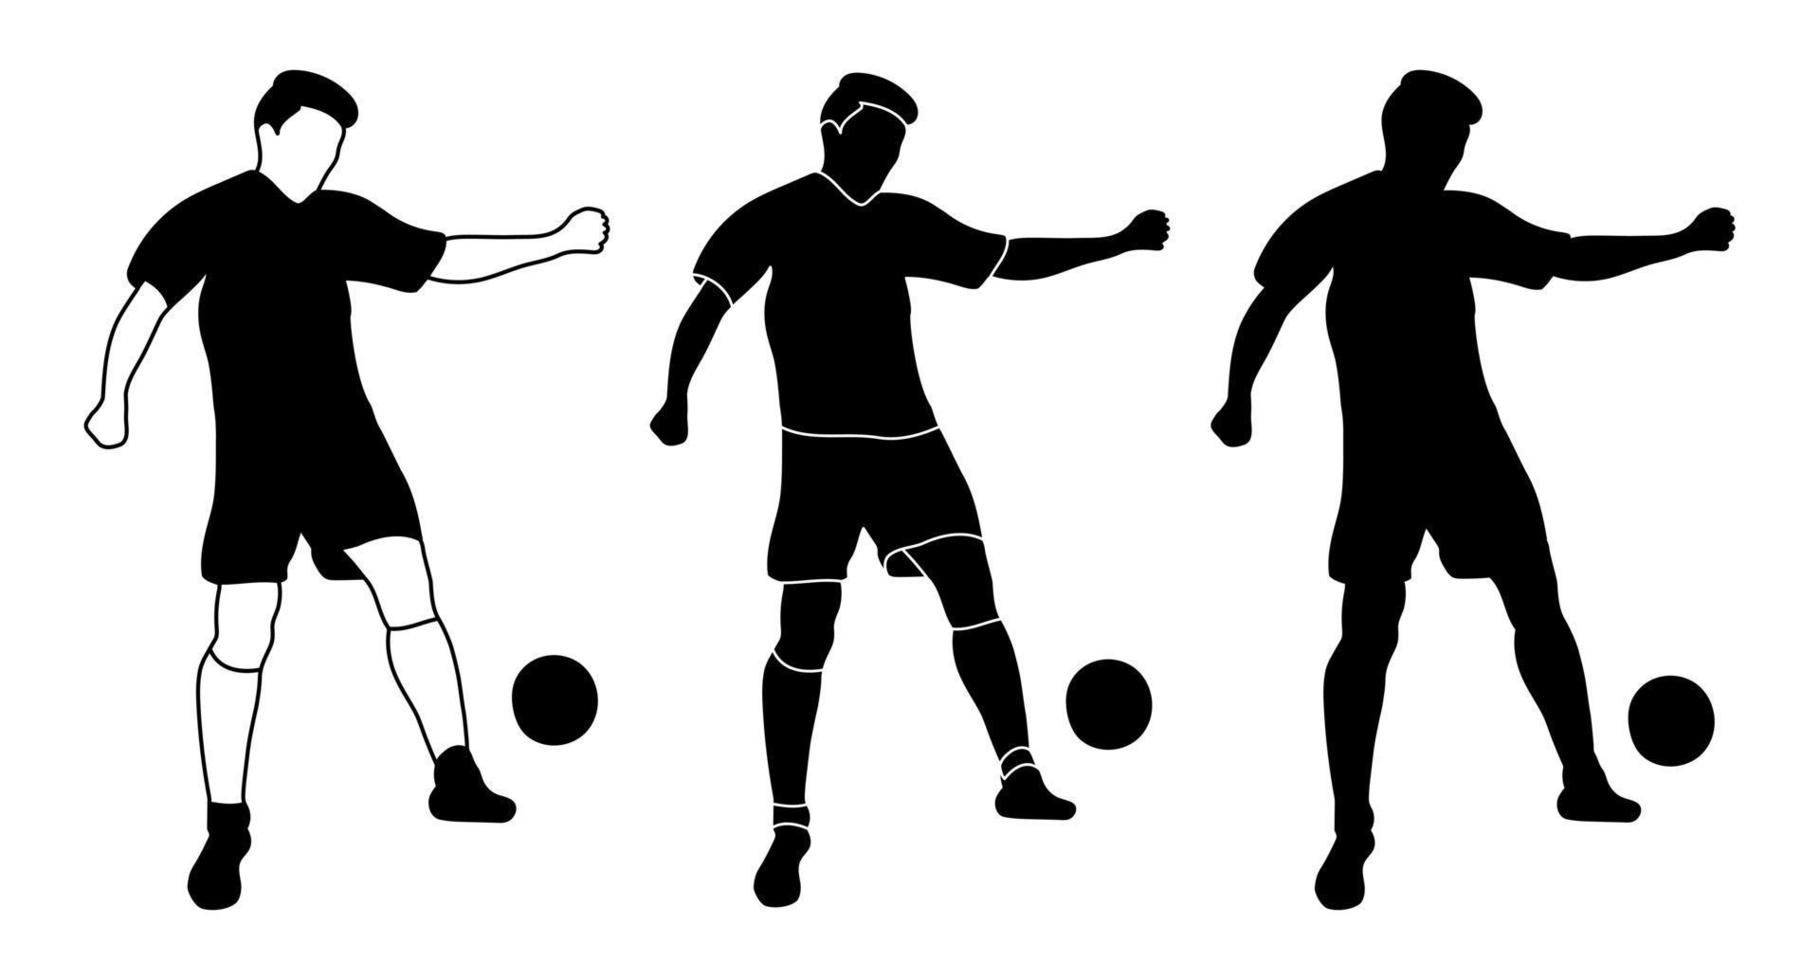 ensemble, contour de la silhouette, football sportif, joueurs de football. football, sport, vecteur isolé.